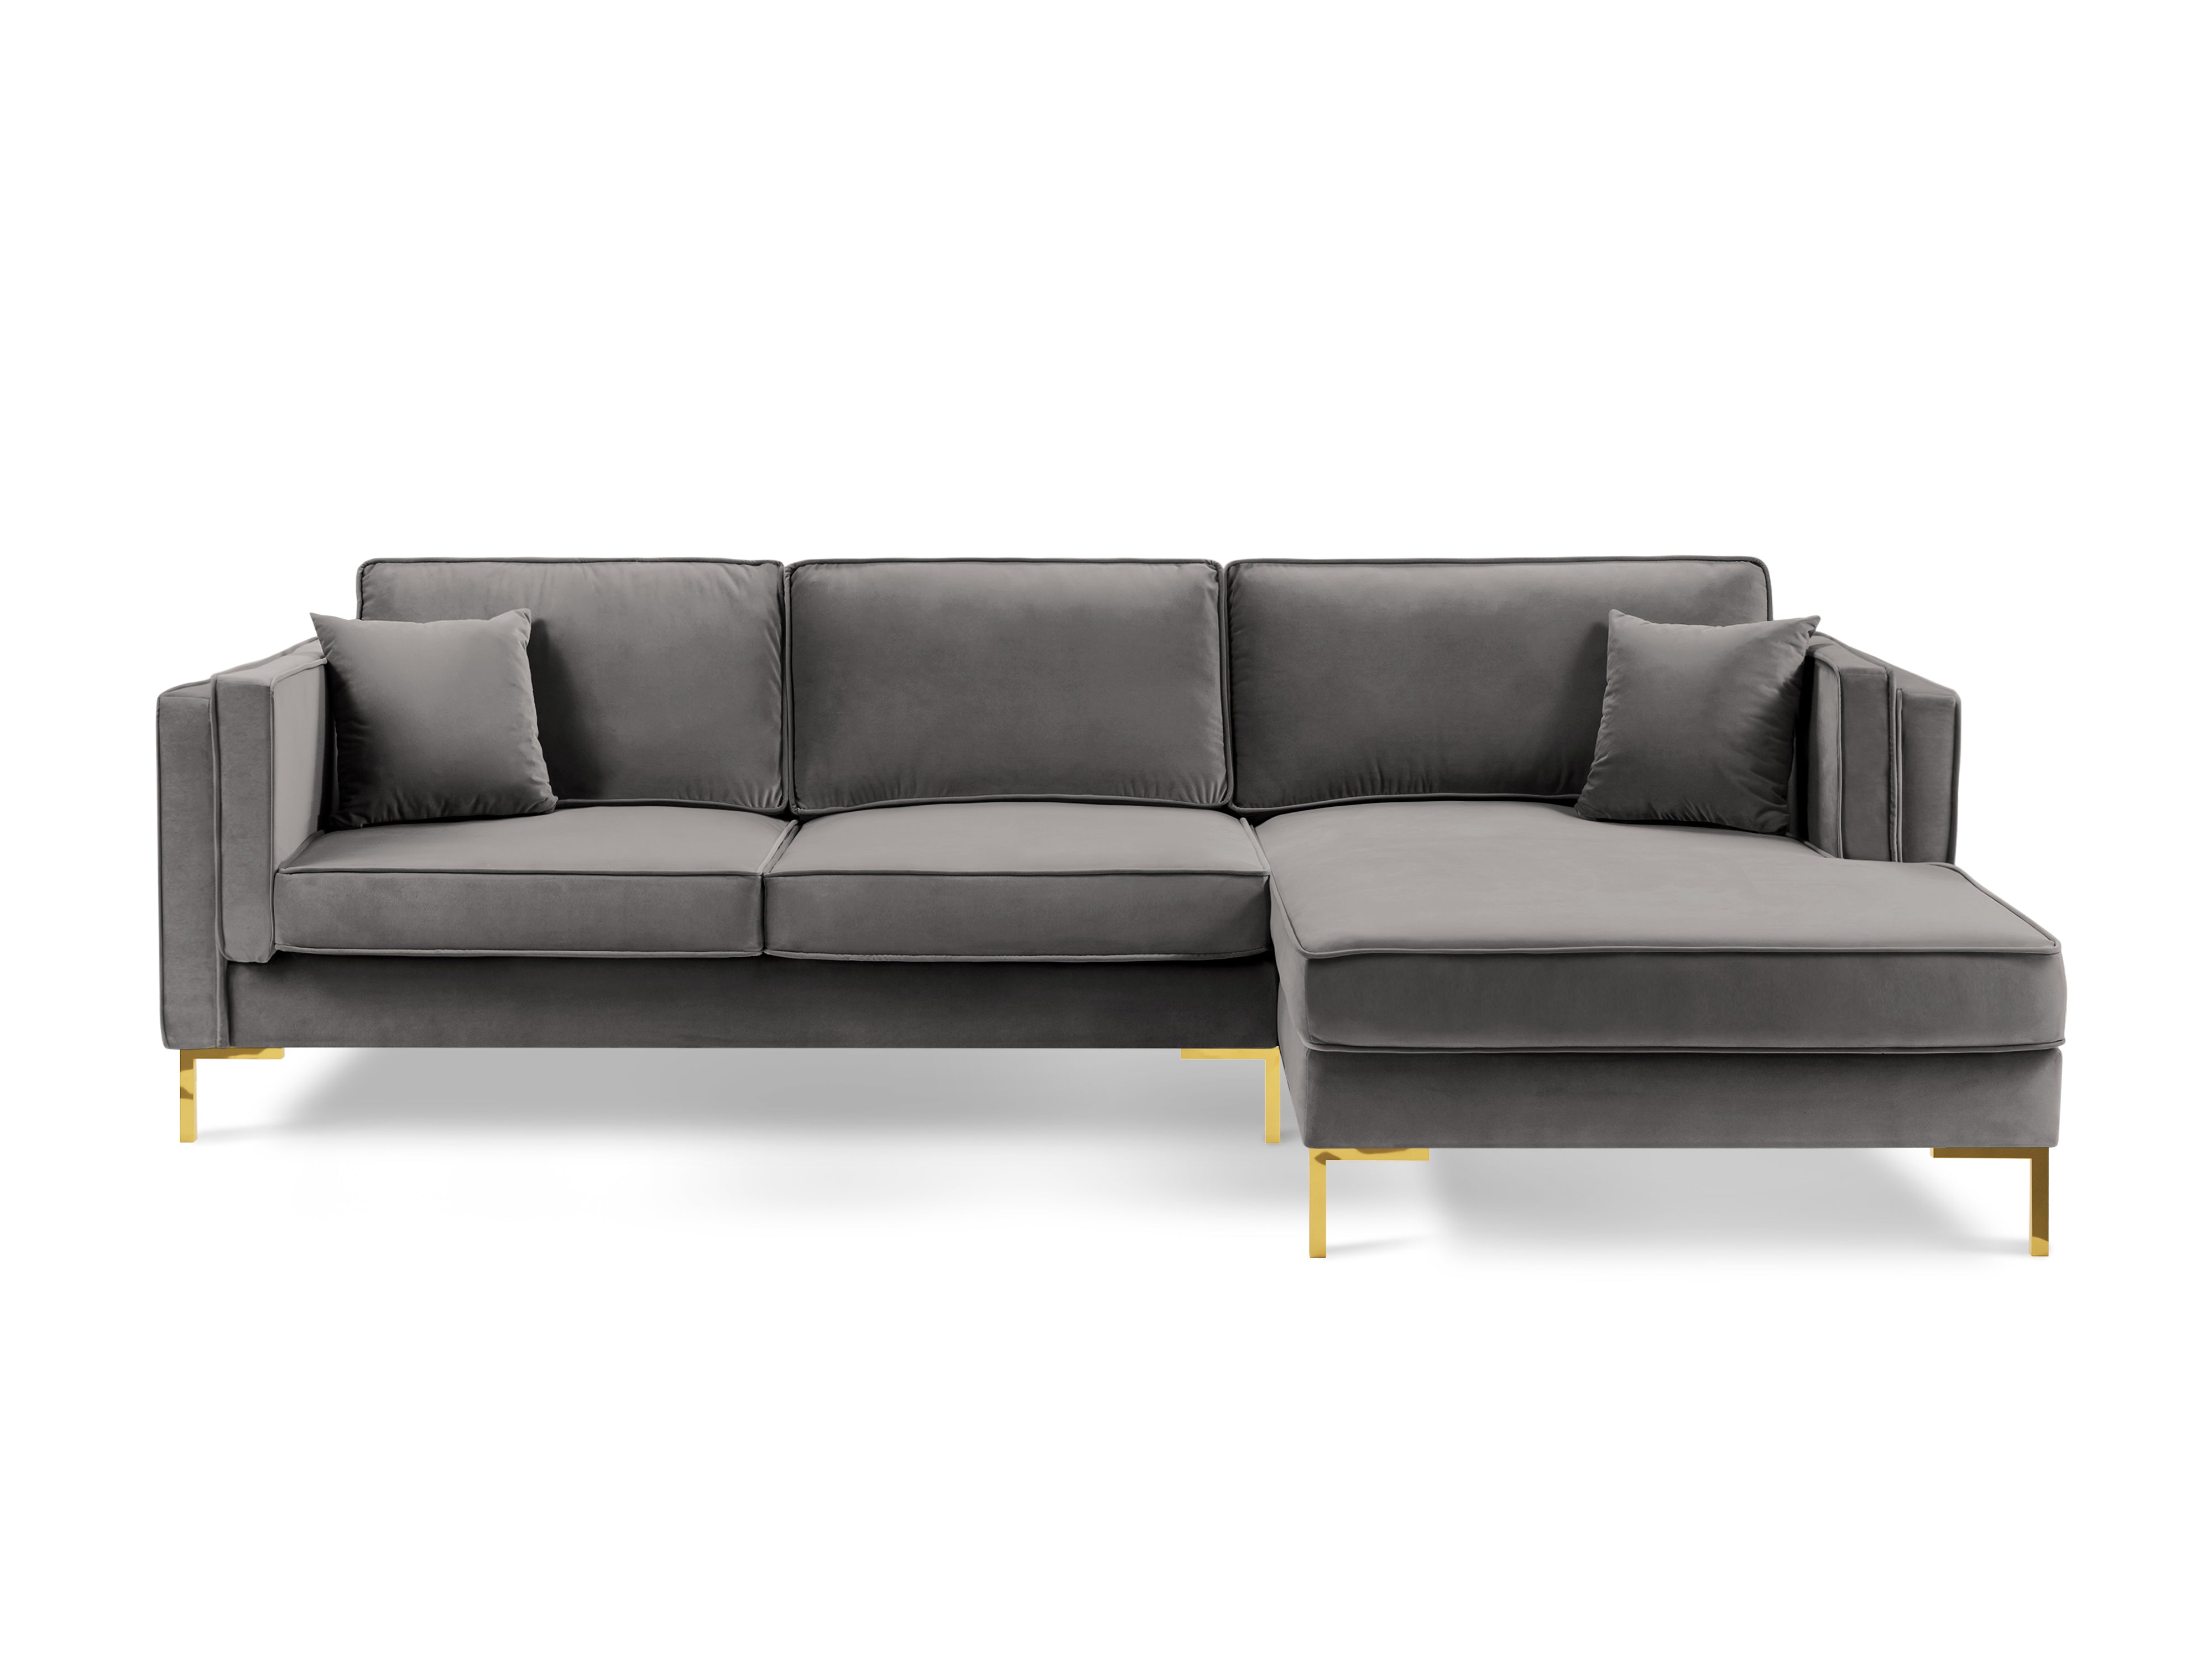 LUIS light grey velvet right-hand corner sofa with gold base